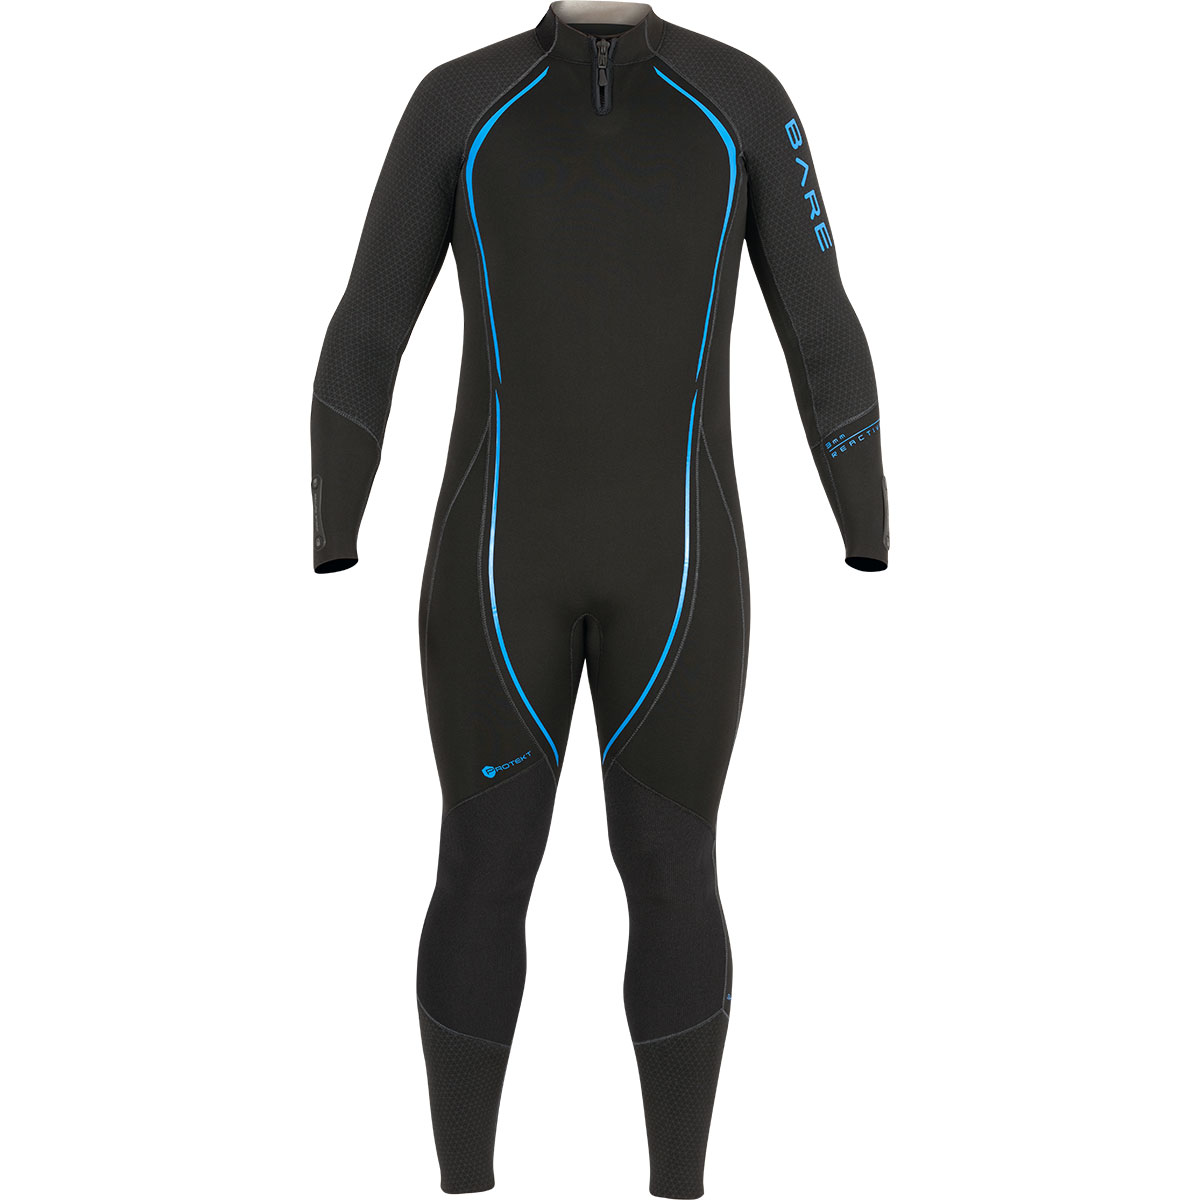 BARE Reactive Wetsuit 3mm For Sale Online - Dan's Dive Shop